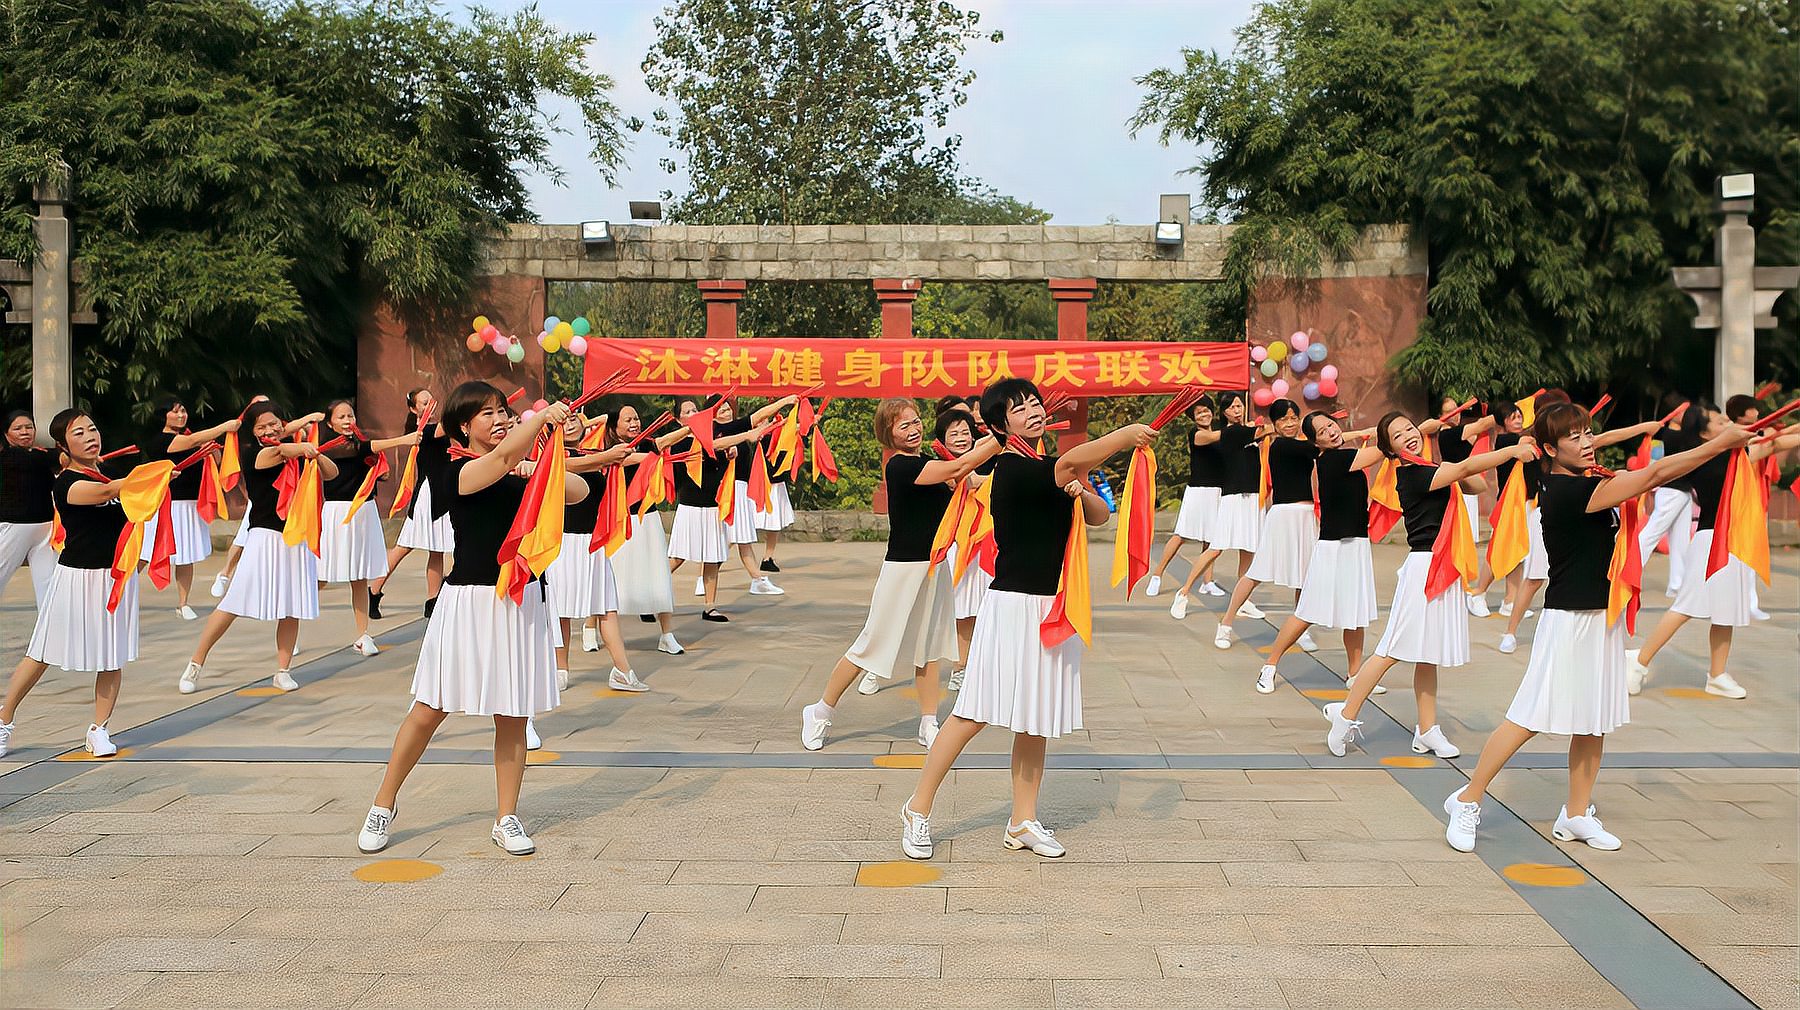 精彩筷子舞——《远方》,衡阳市沐林健身舞蹈队